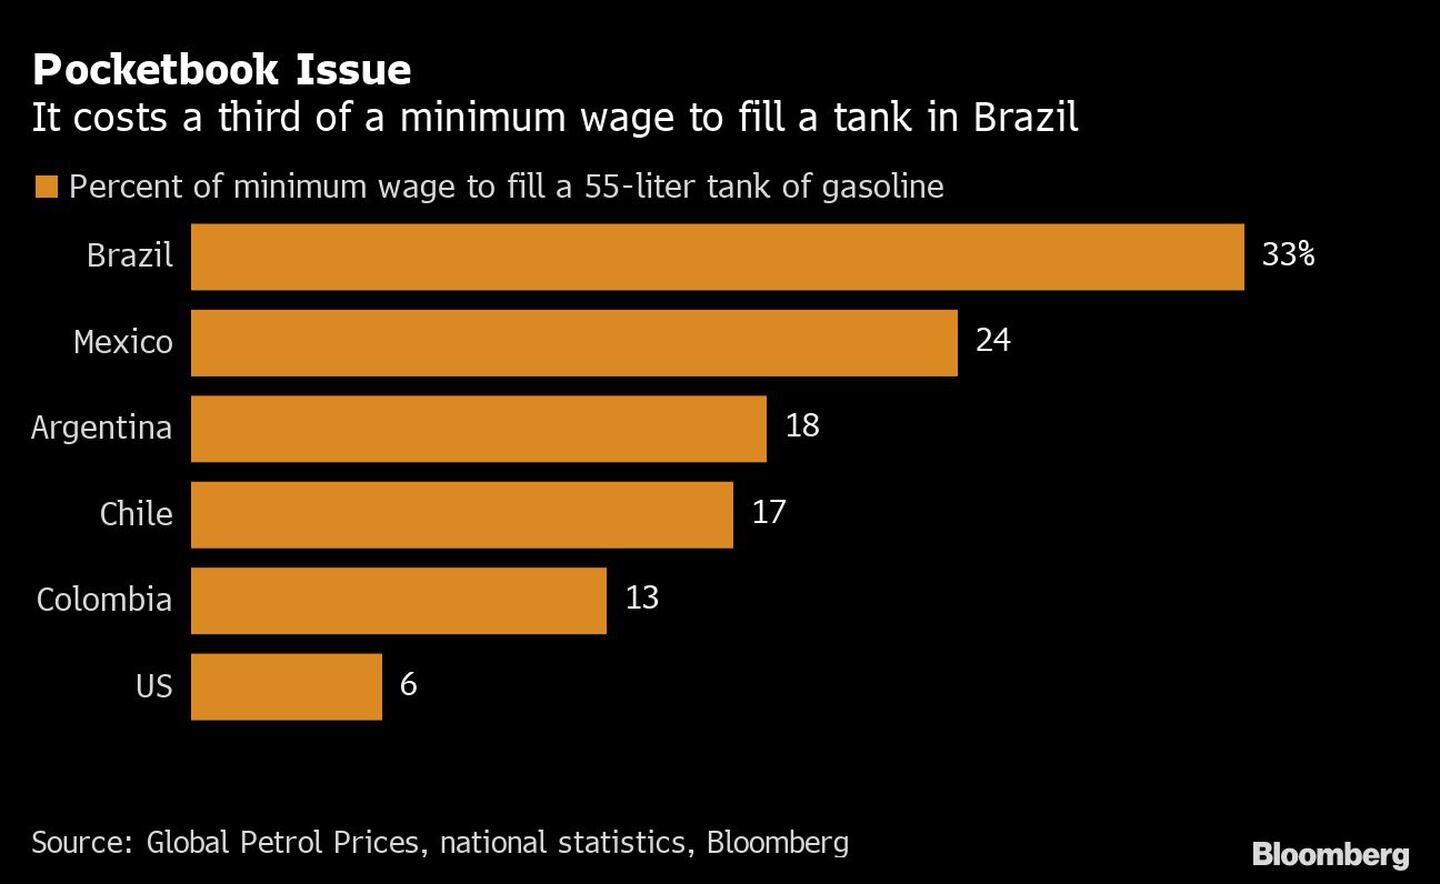 Llenar un tanque en Brasil cuesta un tercio del salario mínimodfd